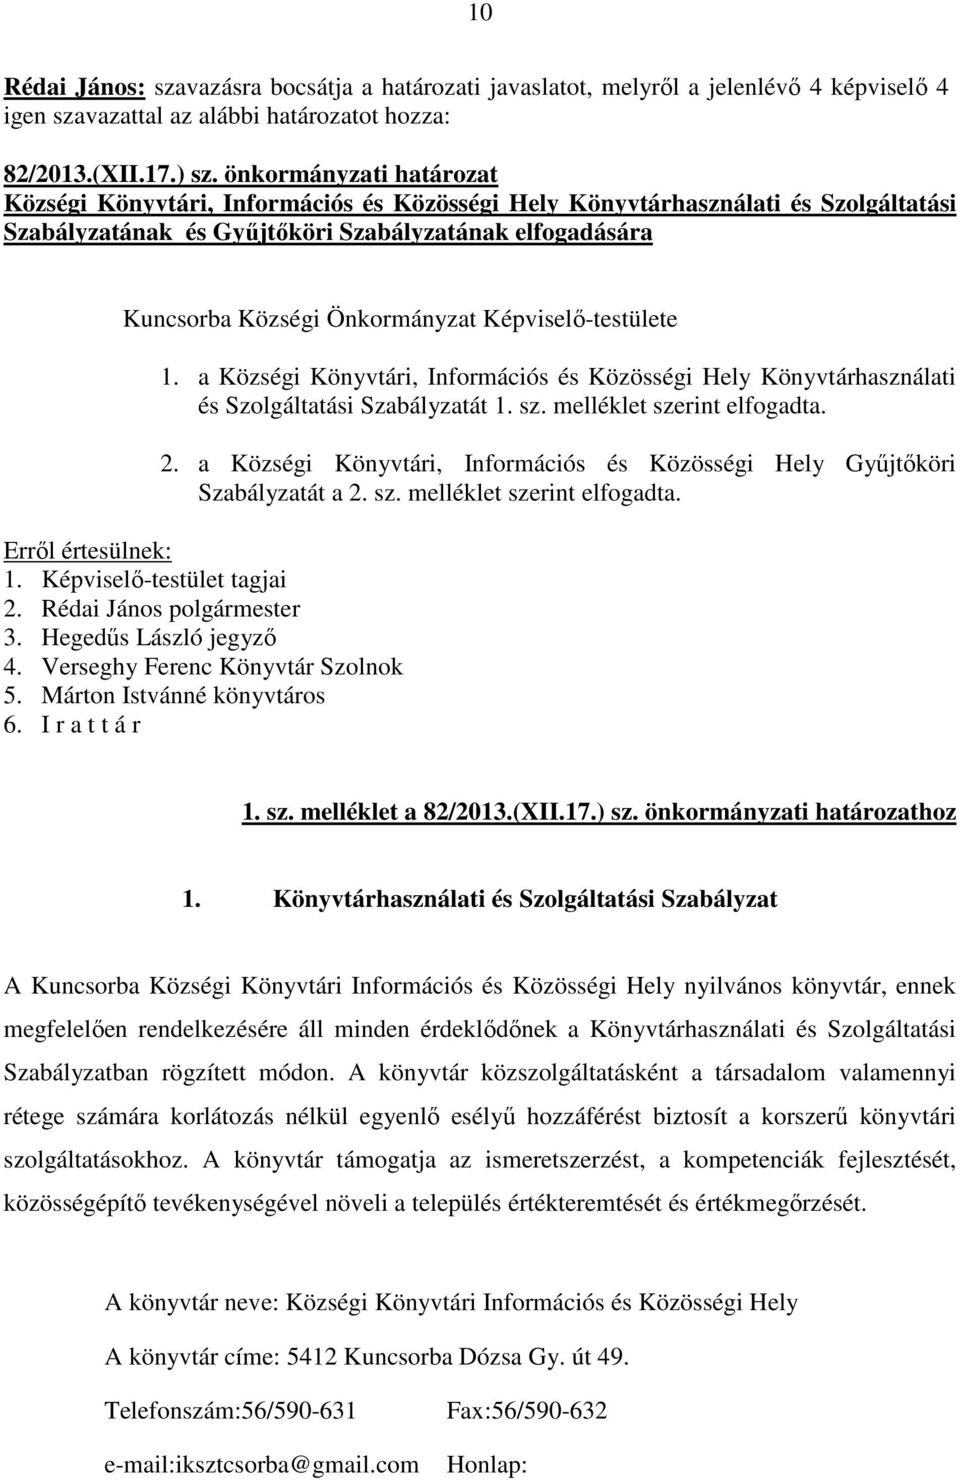 Képviselı-testülete 1. a Községi Könyvtári, Információs és Közösségi Hely Könyvtárhasználati és Szolgáltatási Szabályzatát 1. sz. melléklet szerint elfogadta. 2.